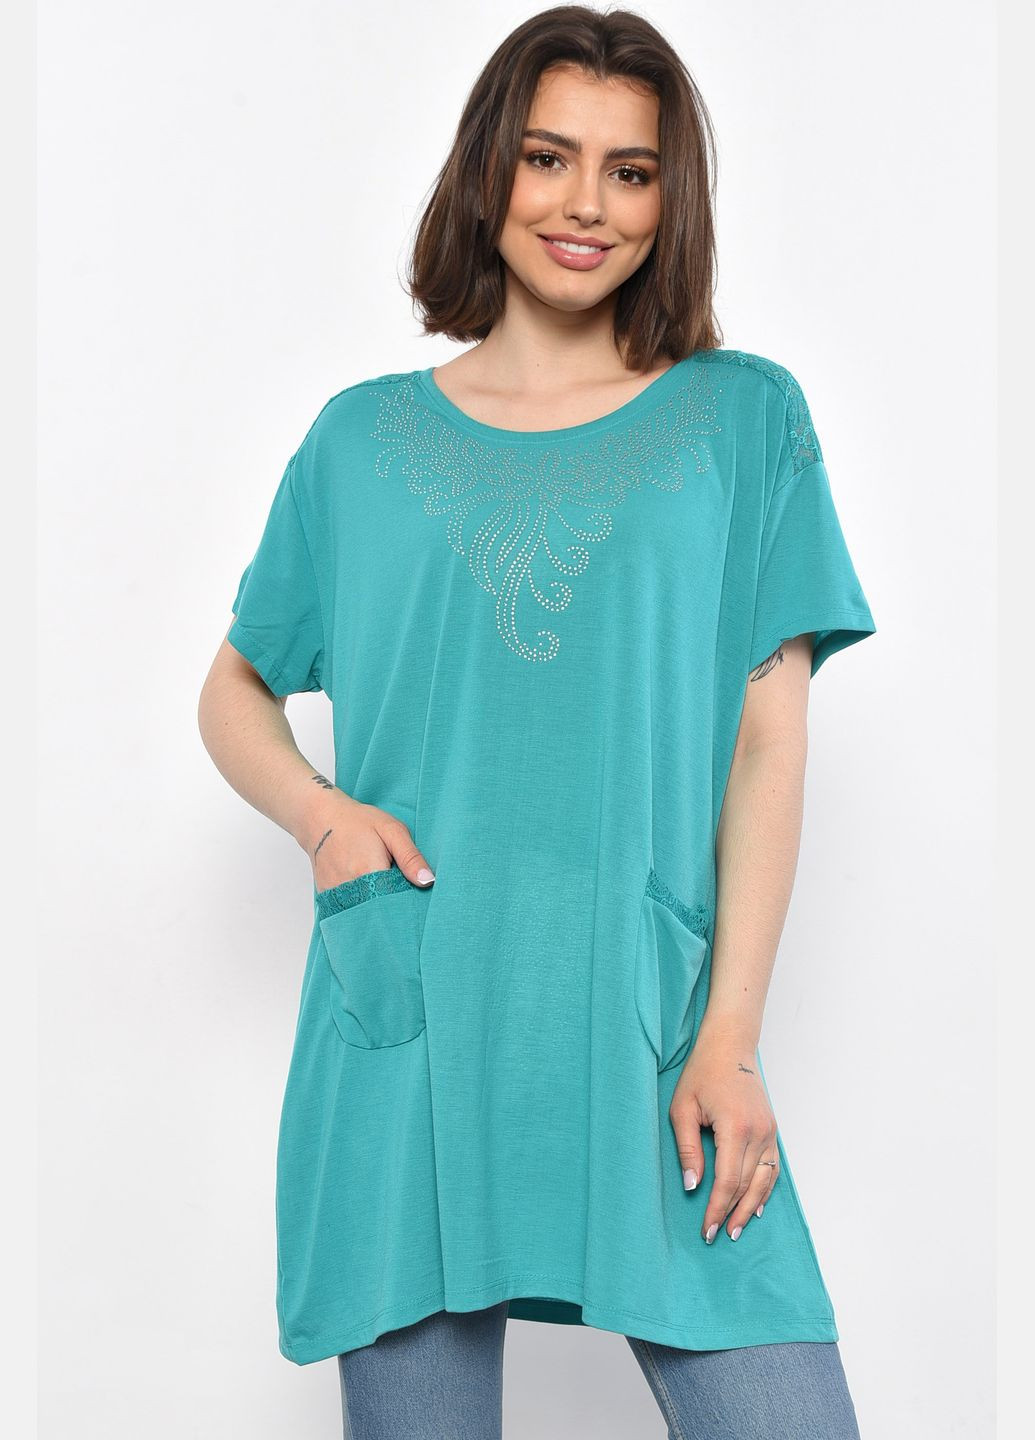 Бирюзовая летняя футболка женская батальная бирюзового цвета Let's Shop